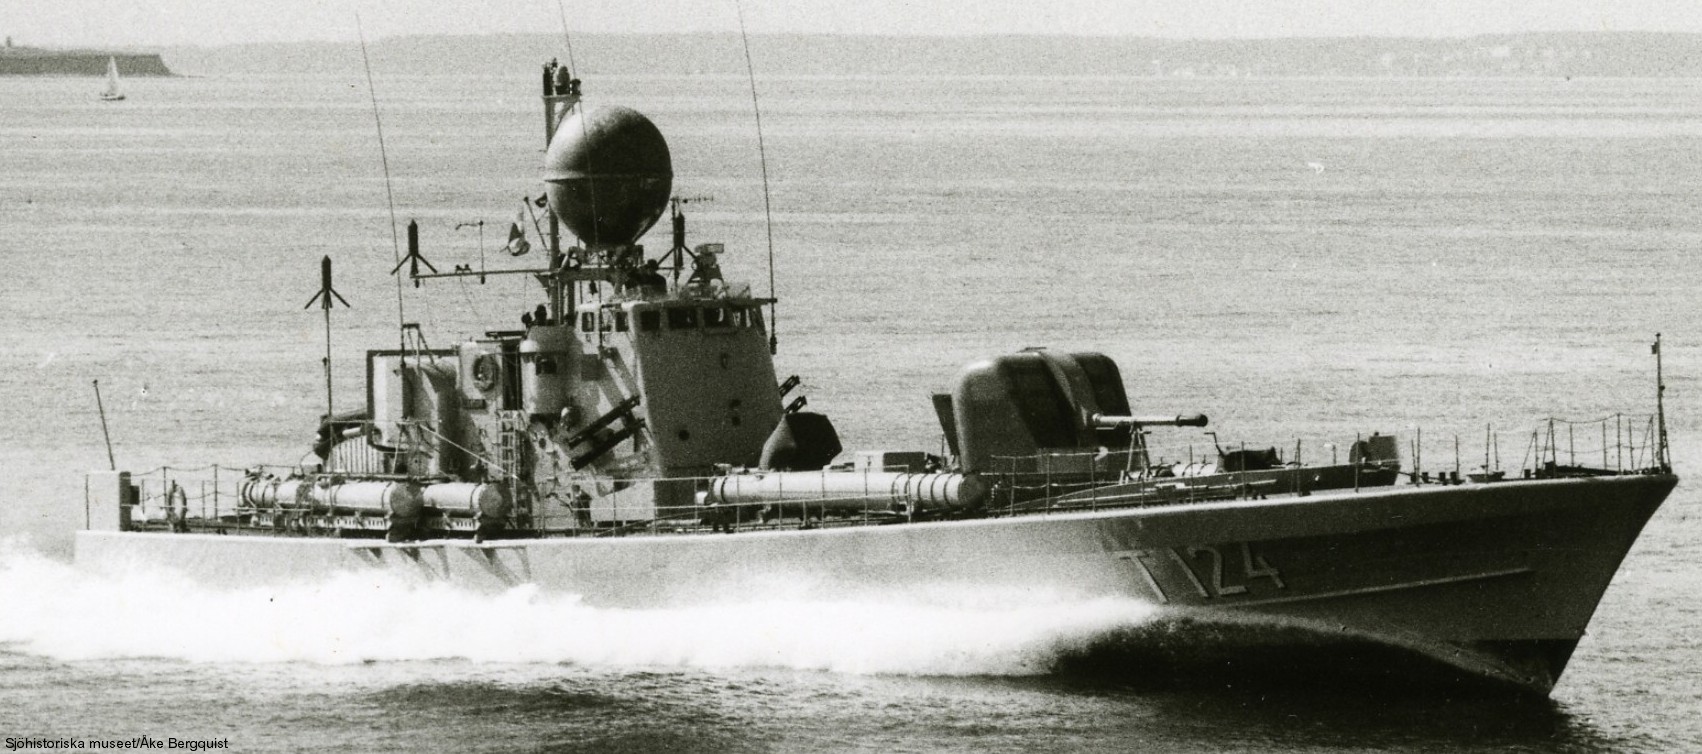 t124 castor hswms hms spica class fast attack craft torpedo boat vessel swedish navy svenska marinen 08